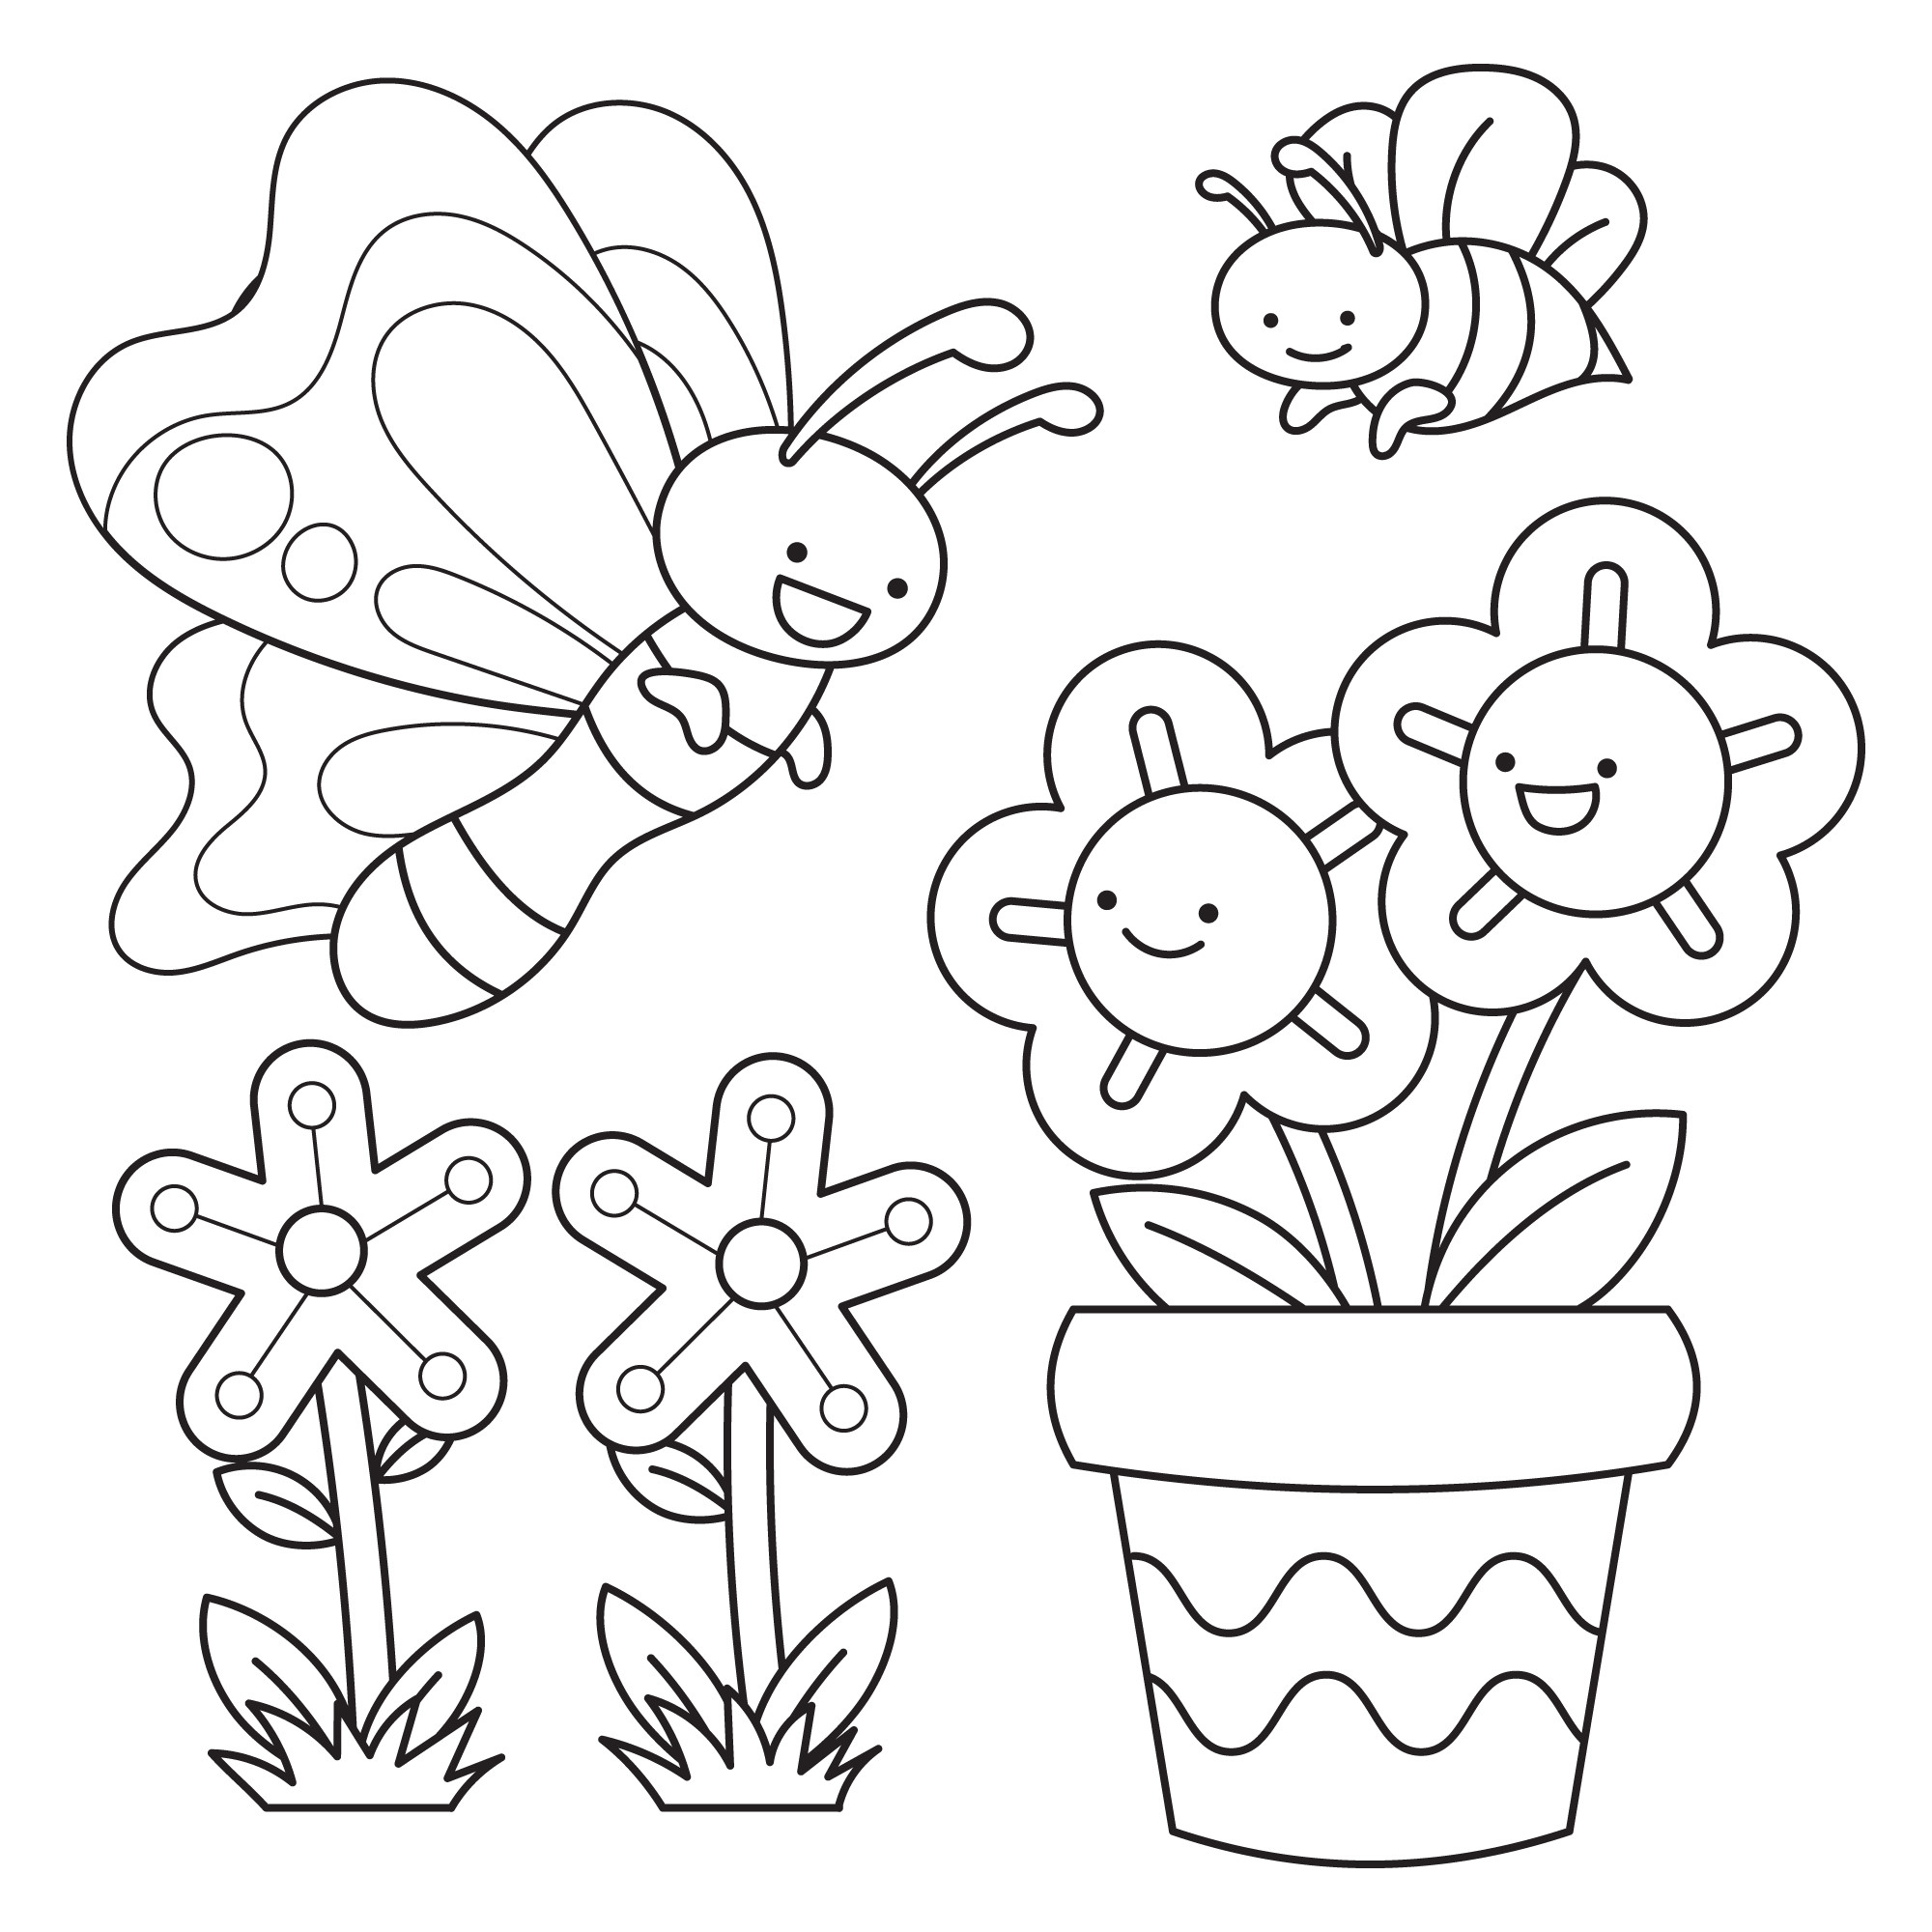 Раскраска для детей: цветы в горшке и пчелы